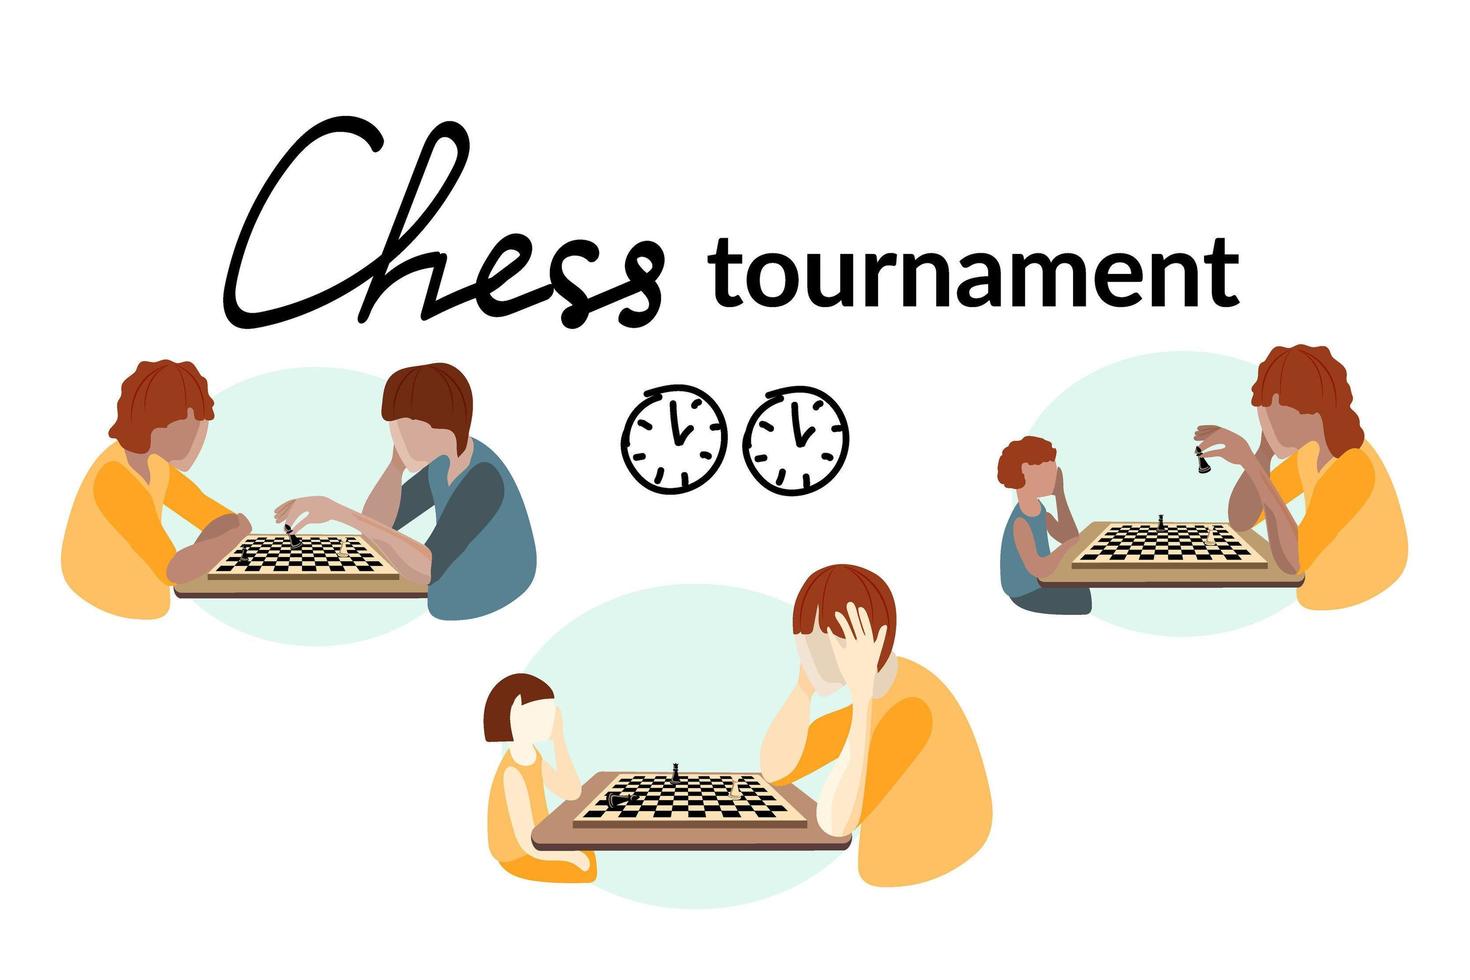 das Konzept eines Schachturniers. Menschen unterschiedlichen Alters und Rassen spielen Schach. Schachbrett und die Figuren darauf. Vektor im flachen Stil.